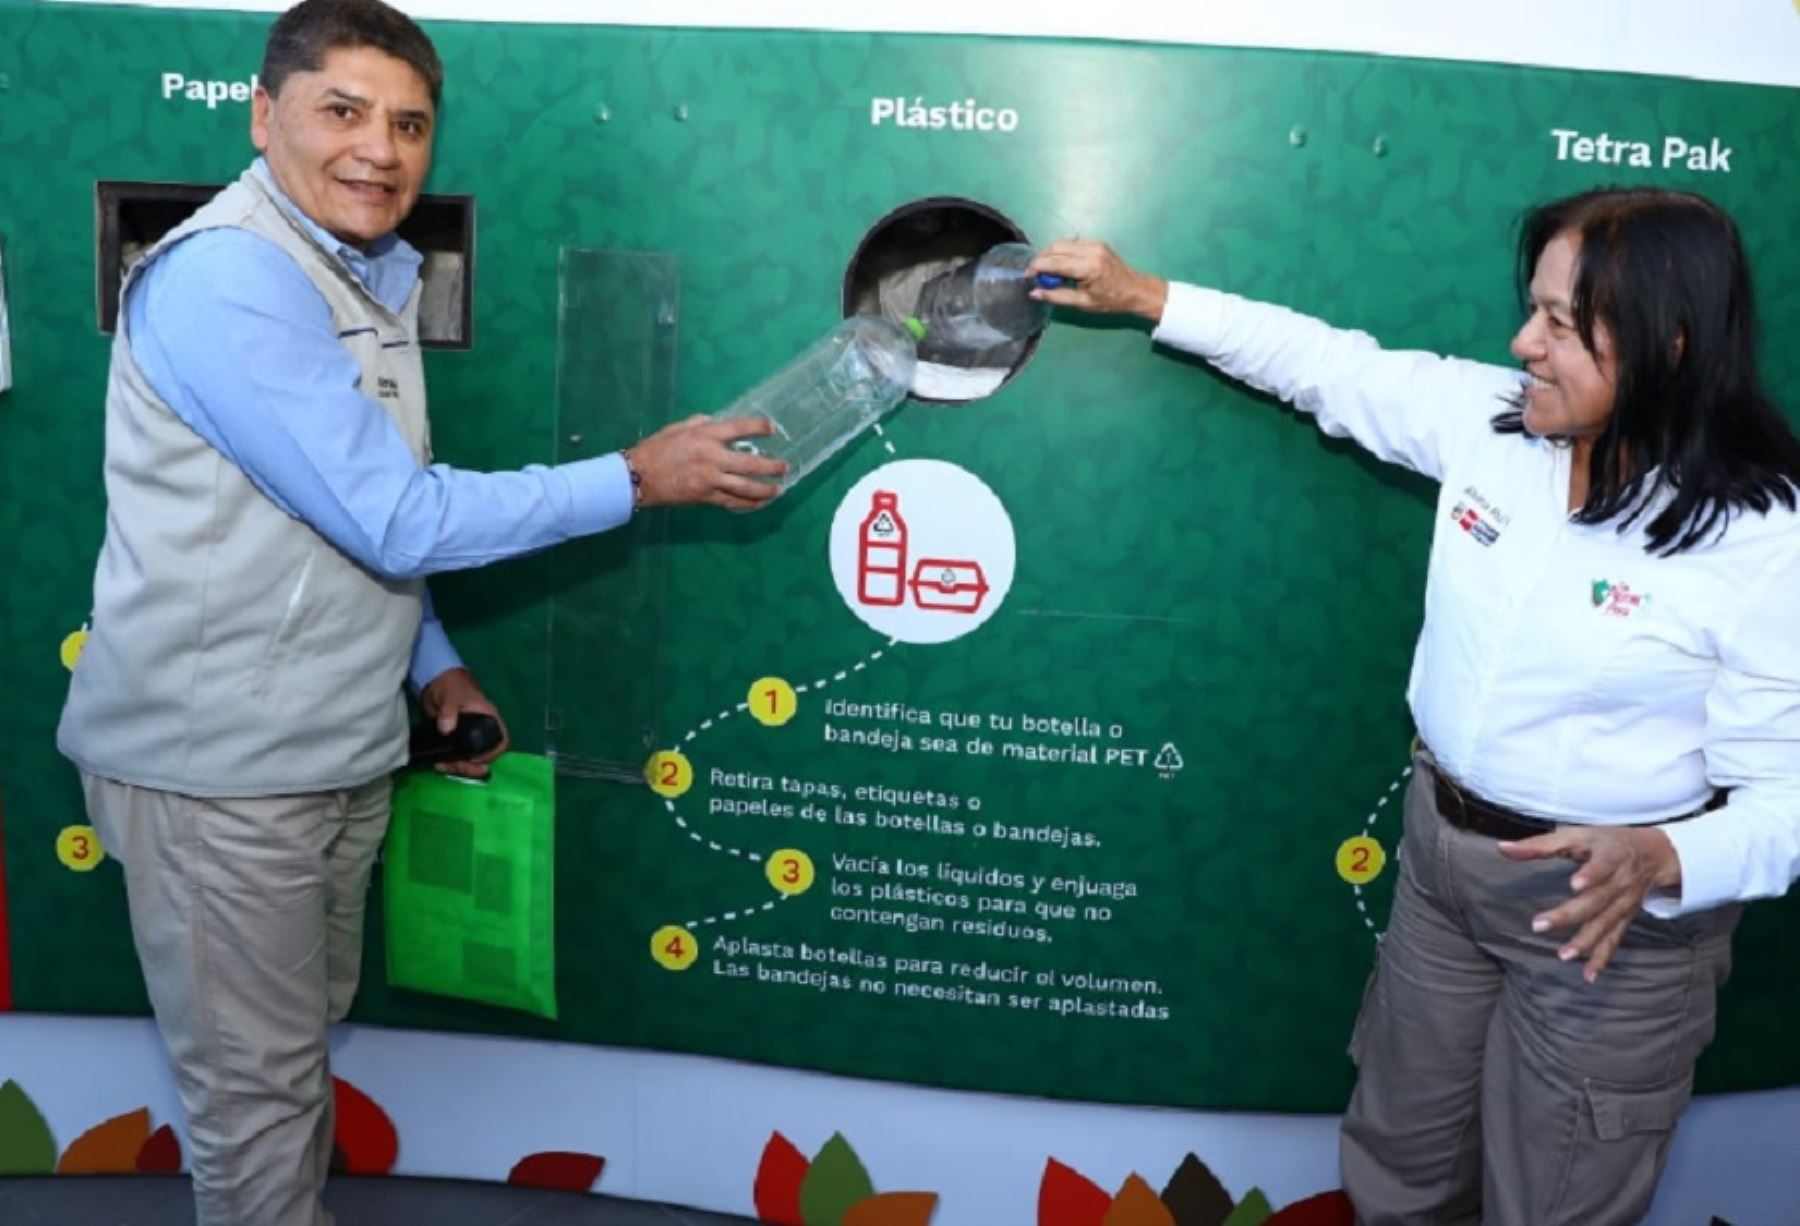 La ministra del Ambiente, Albina Ruiz, lanzó hoy la campaña nacional ¡Recicla ya! en la ciudad de Arequipa. Esta iniciativa tiene la finalidad de concientizar a la ciudadanía sobre la importancia de separar los residuos aprovechables con el propósito de promover el reciclaje.